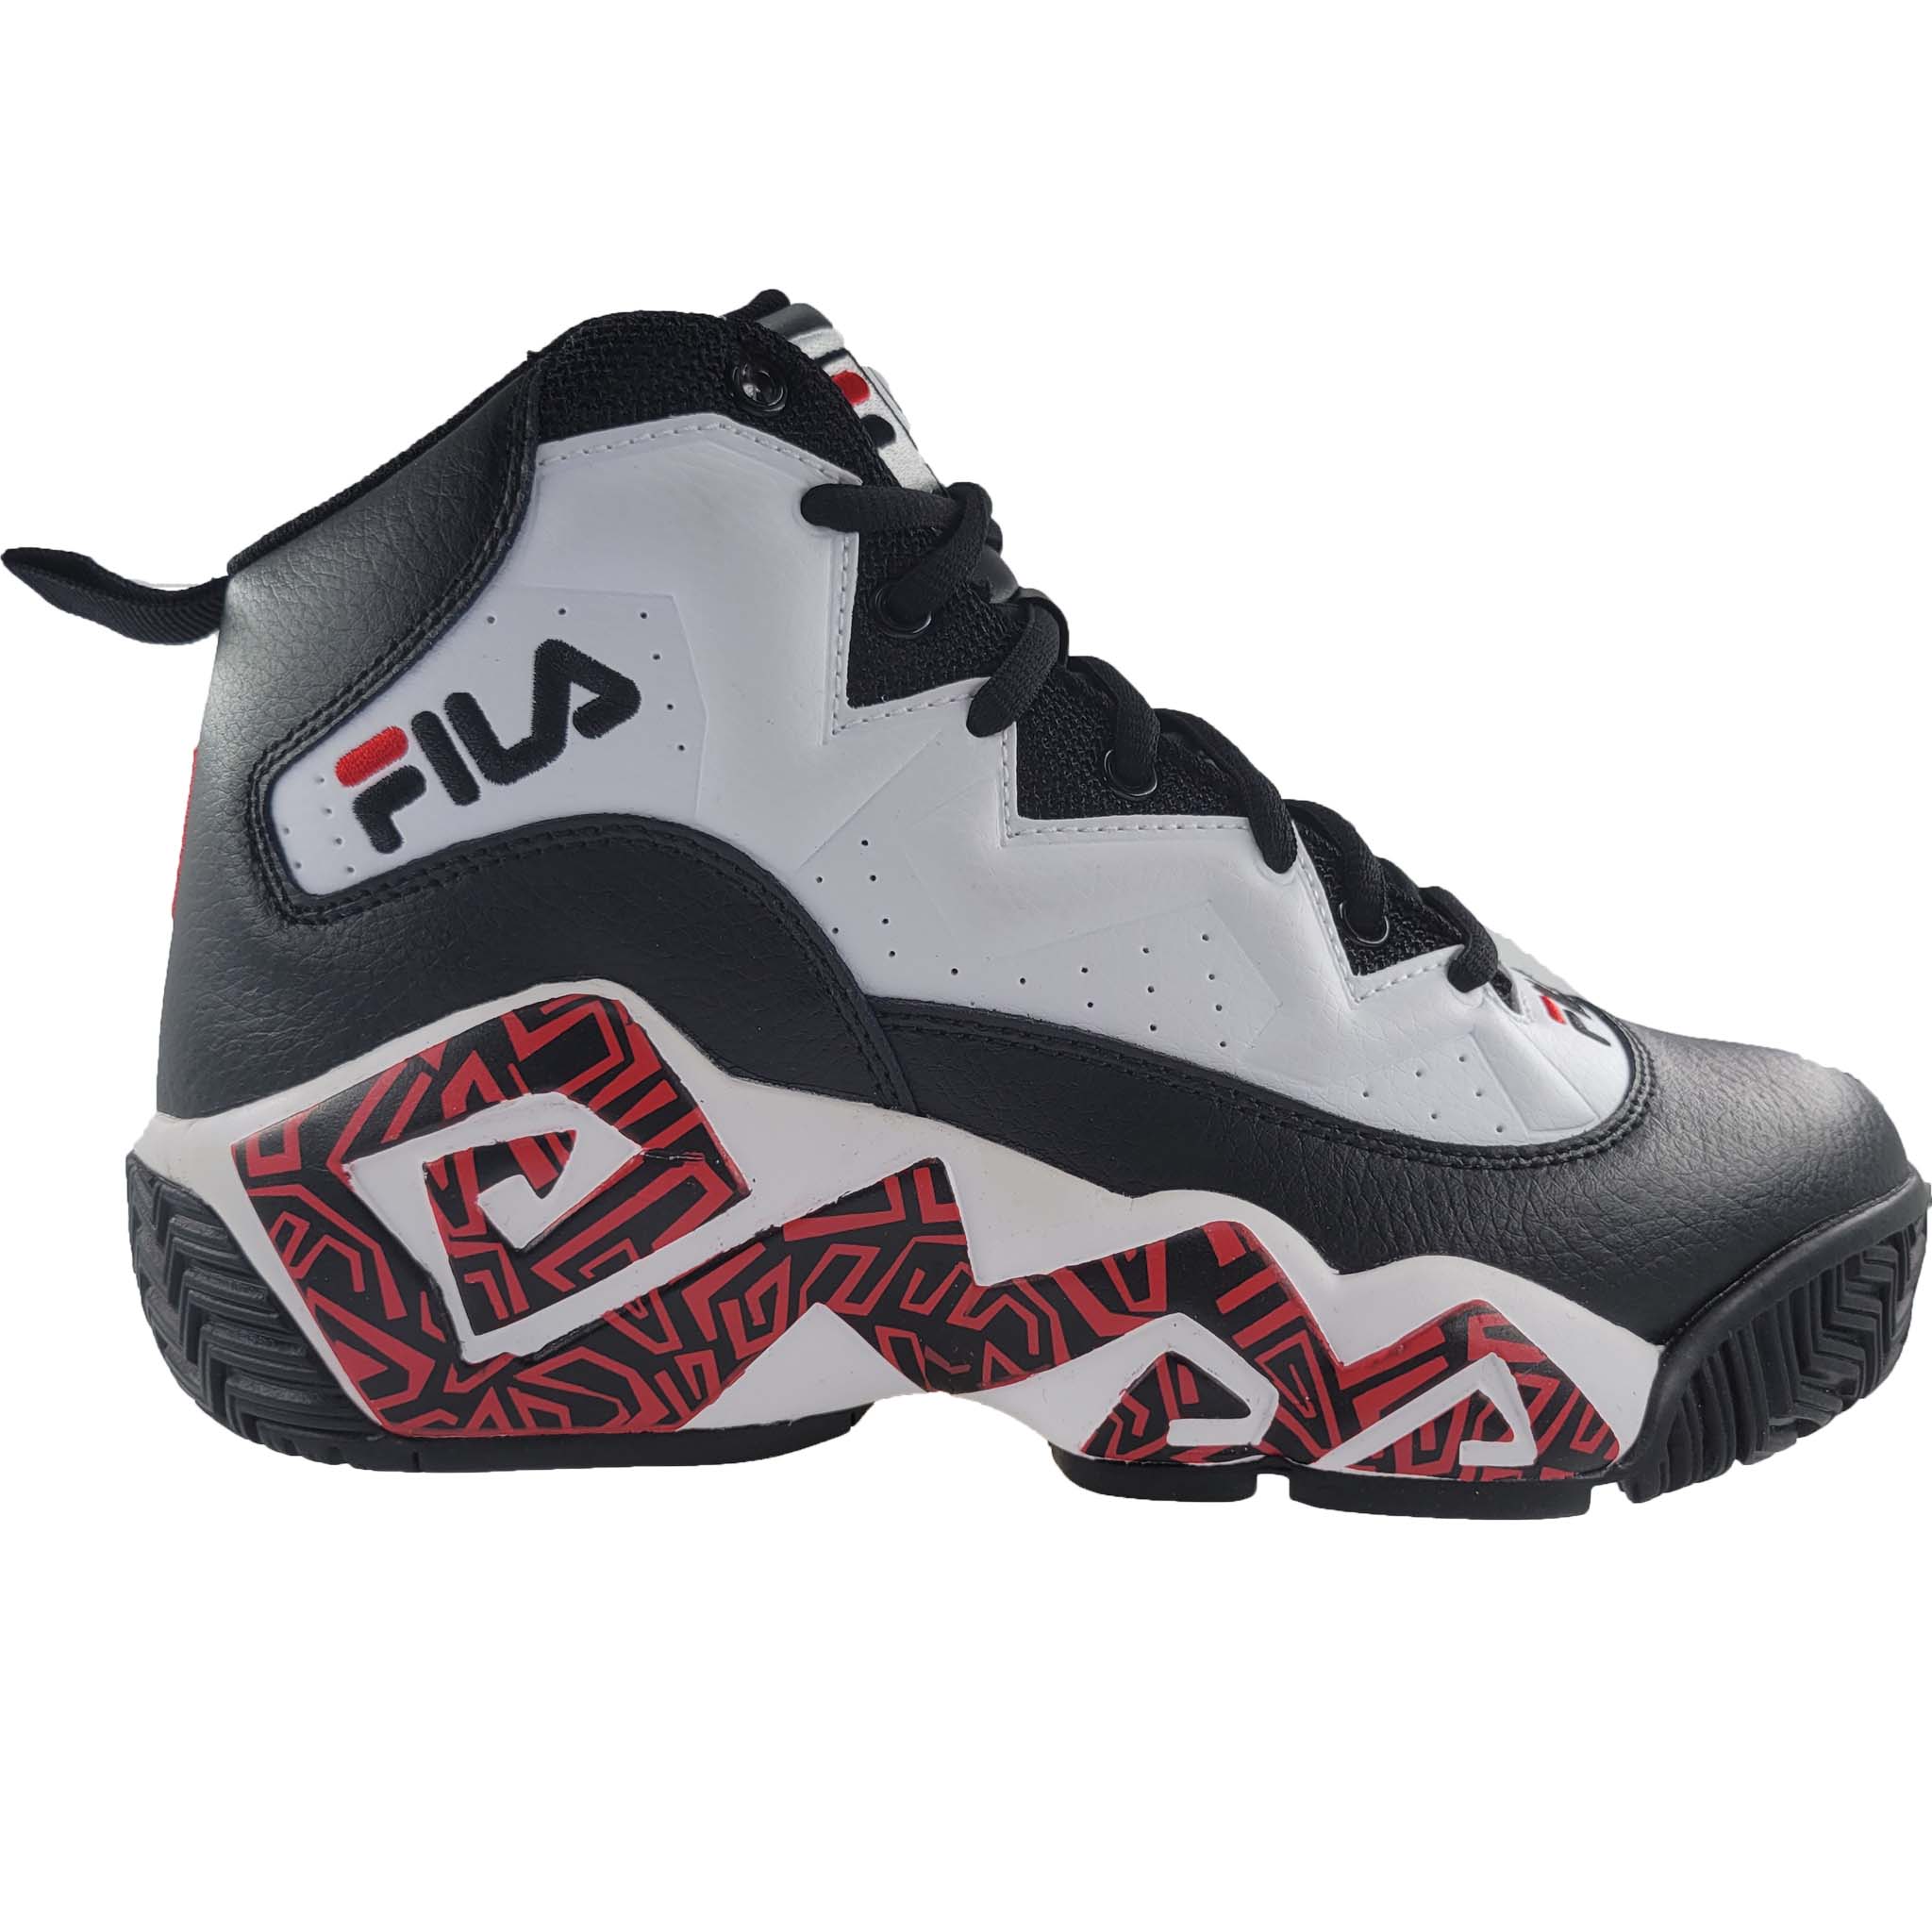 Fila Men's MB Mashburn Basketball Shoes 1BM01267-014 – That Shoe Store More